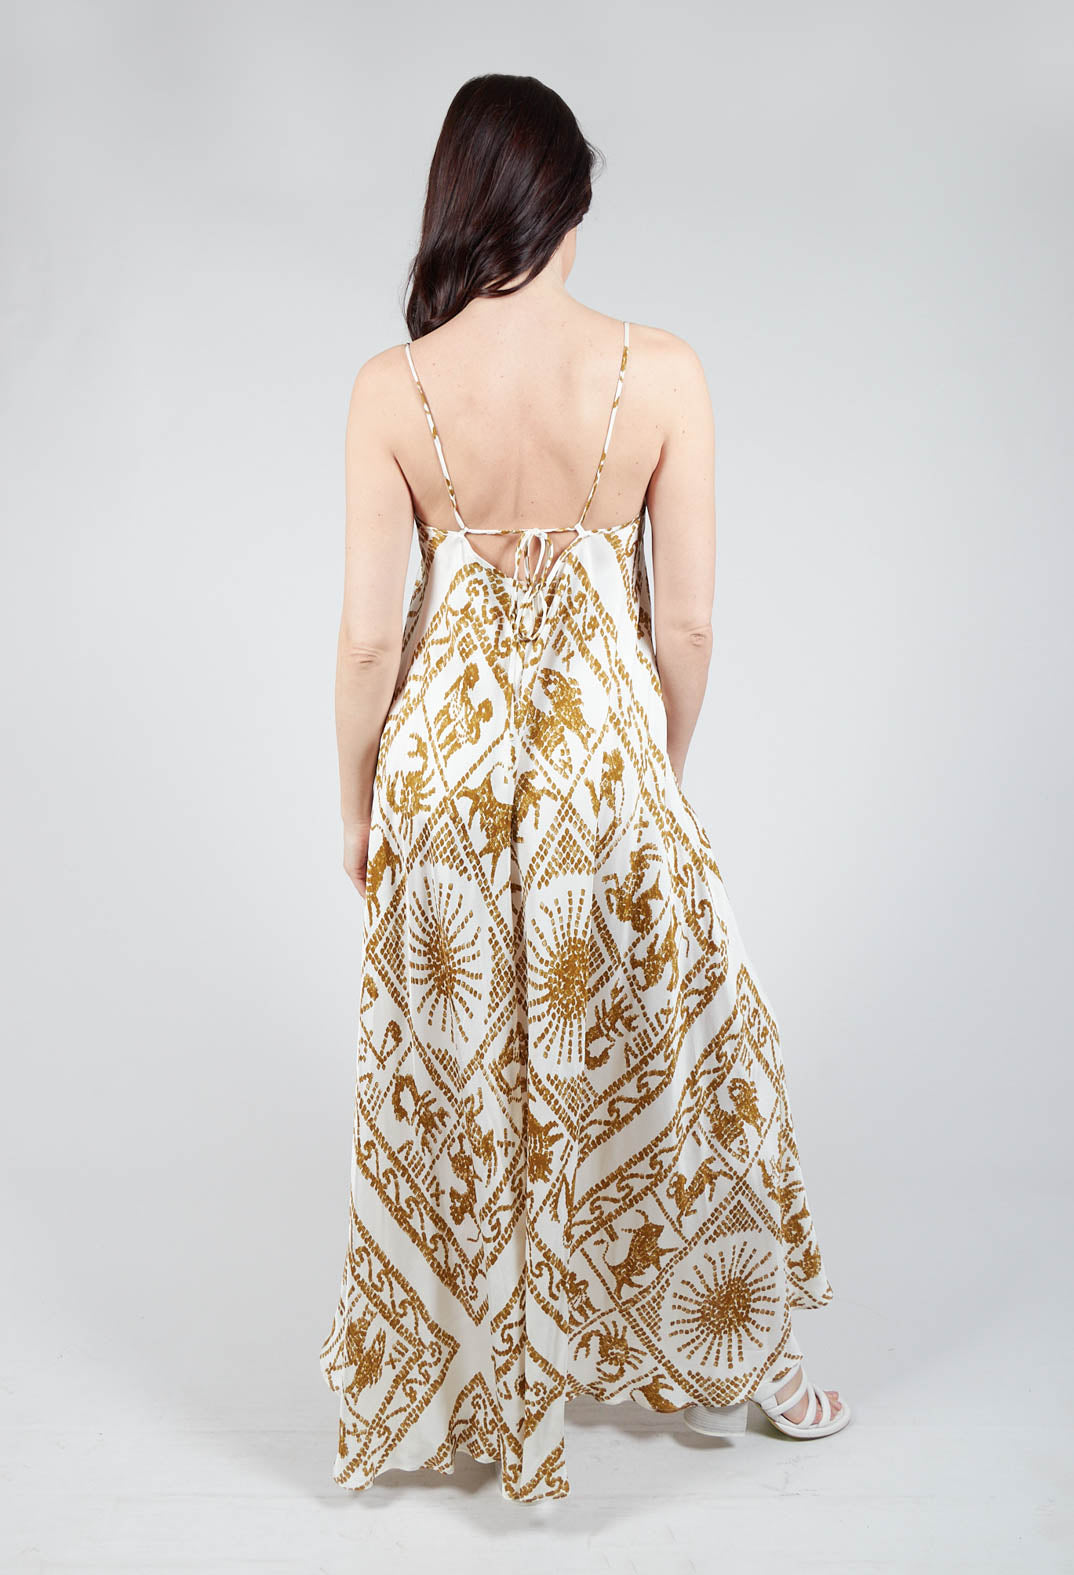 backless skinny strap dress in zodiac print